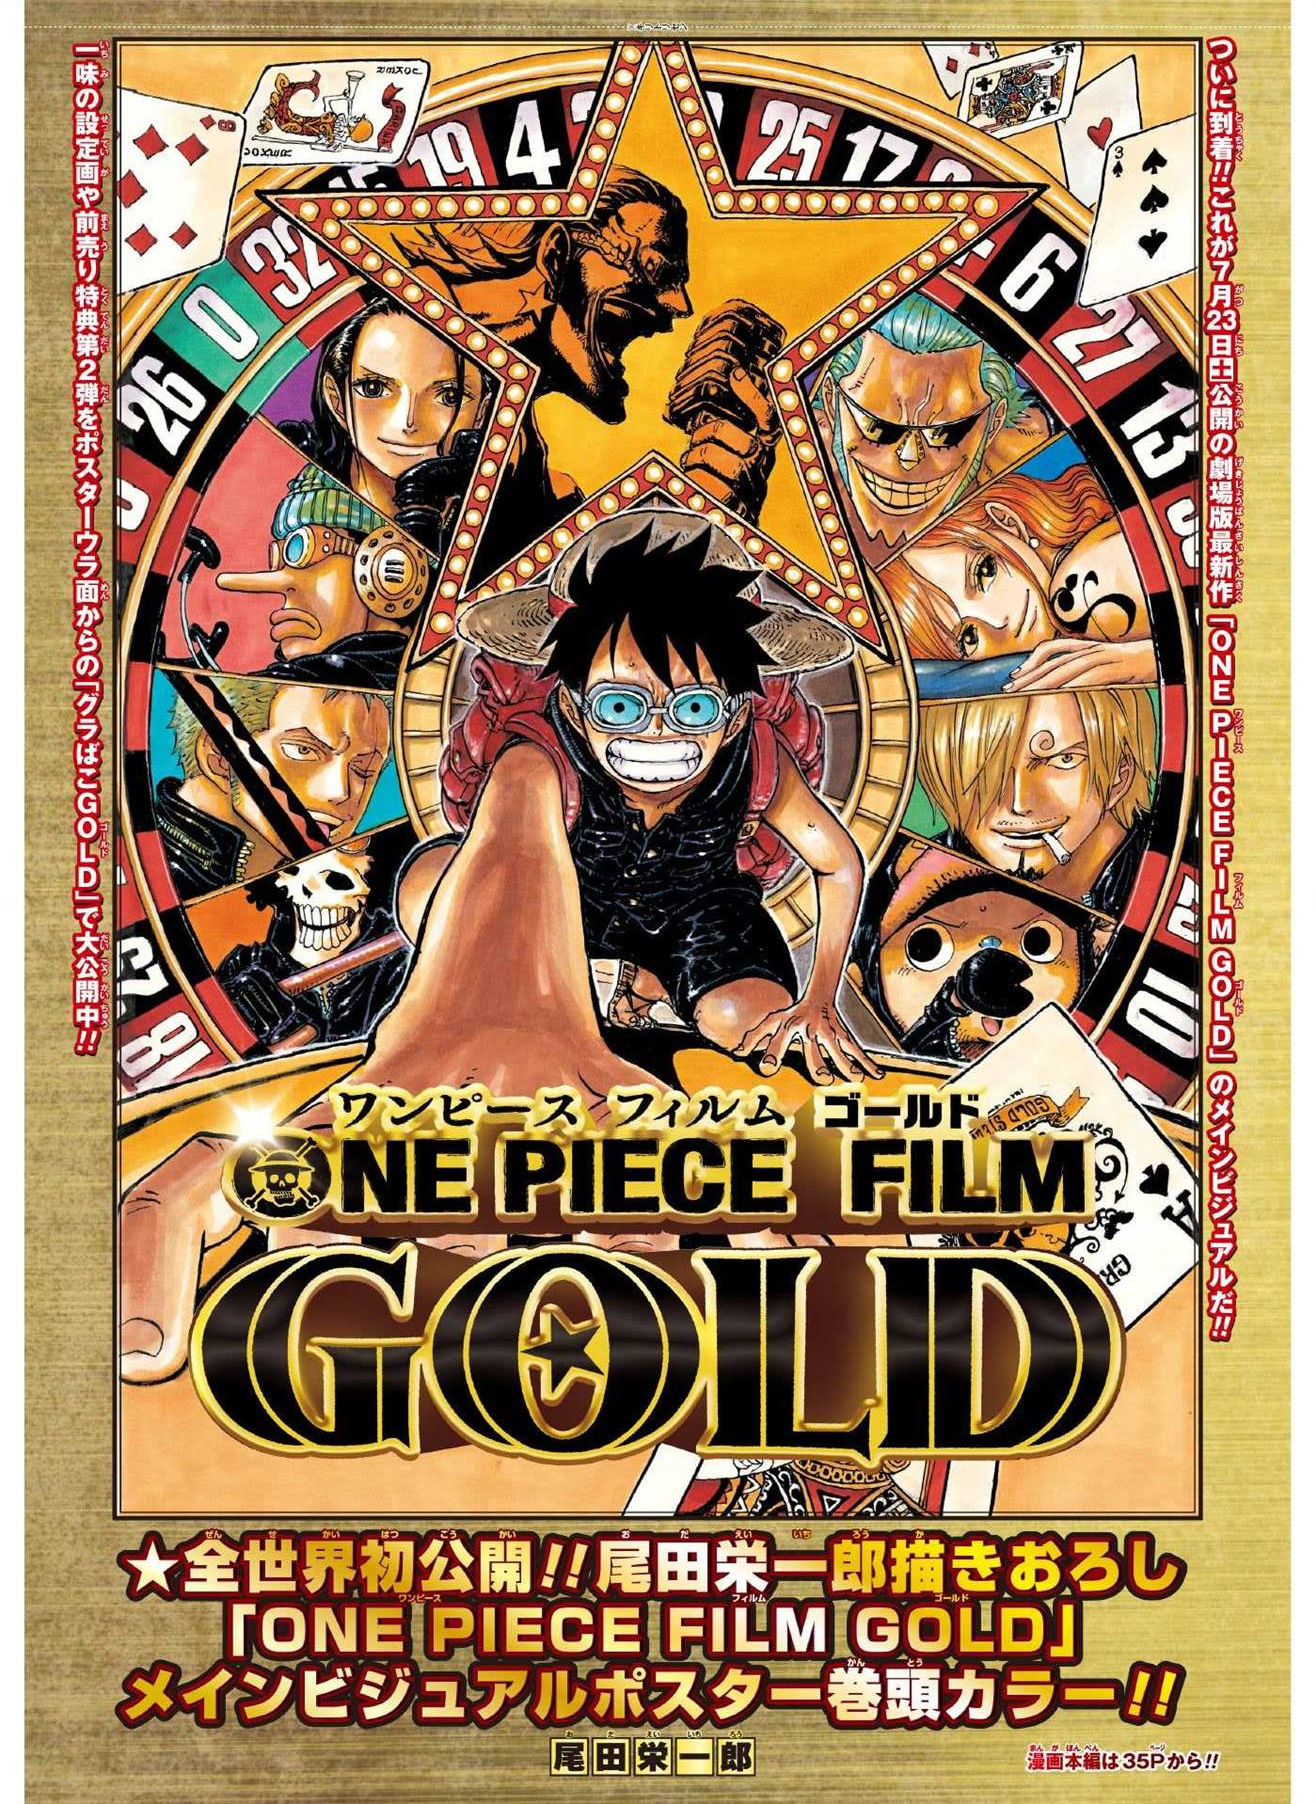 Cinerama - One Piece (1999-) Criador: Eiichiro Oda Ep 817